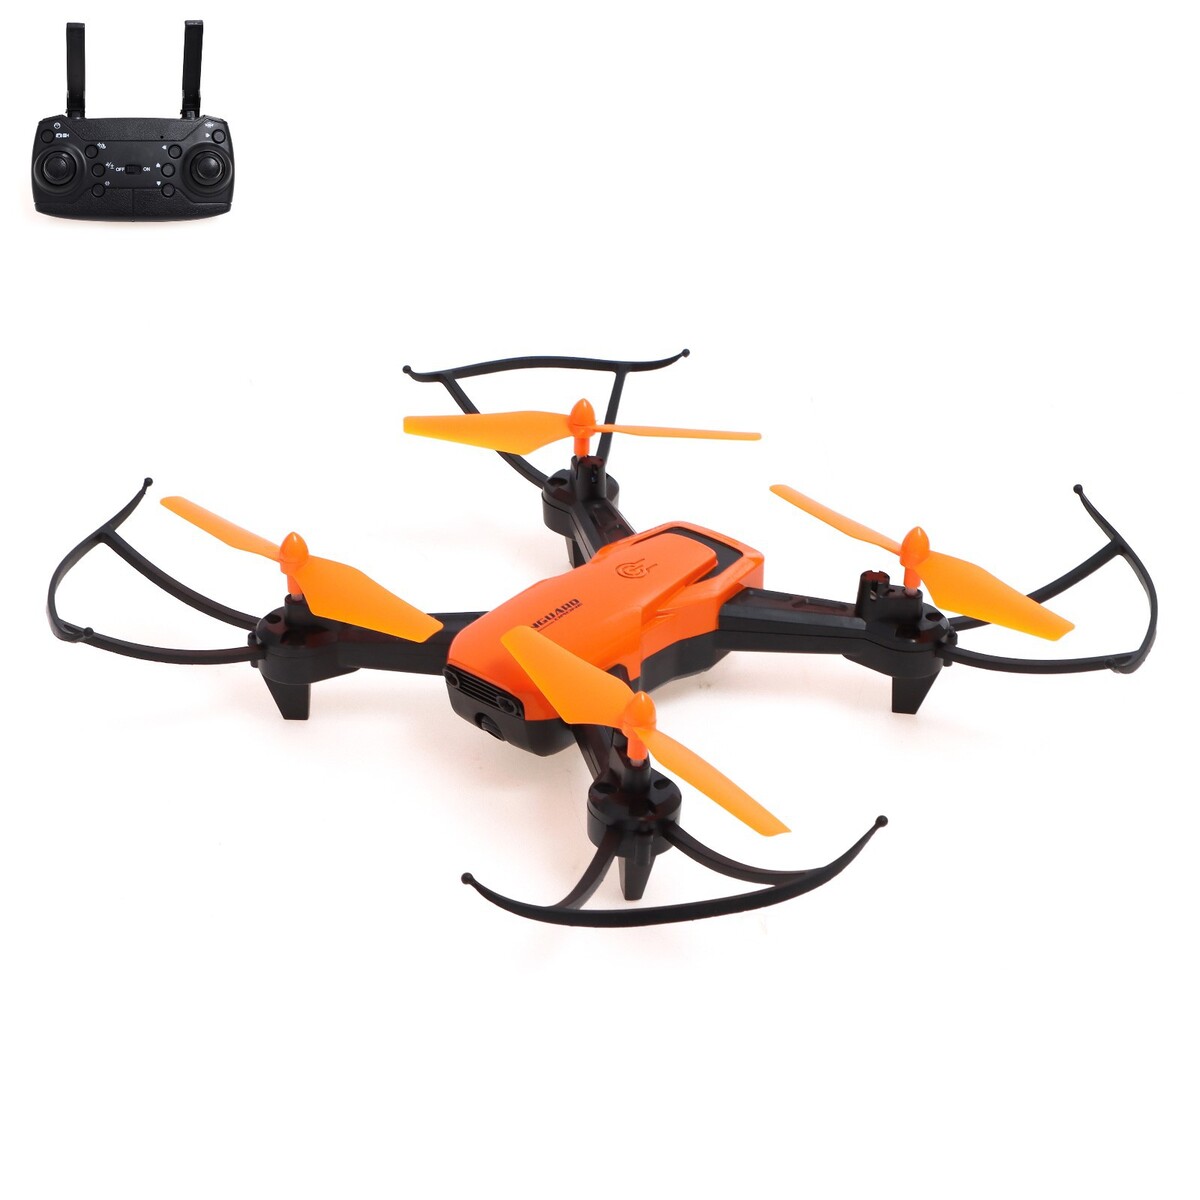 Квадрокоптер lh-x56wf, камера, передача изображения на смартфон, wi-fi, цвет оранжевый кот кирилл и смартфон